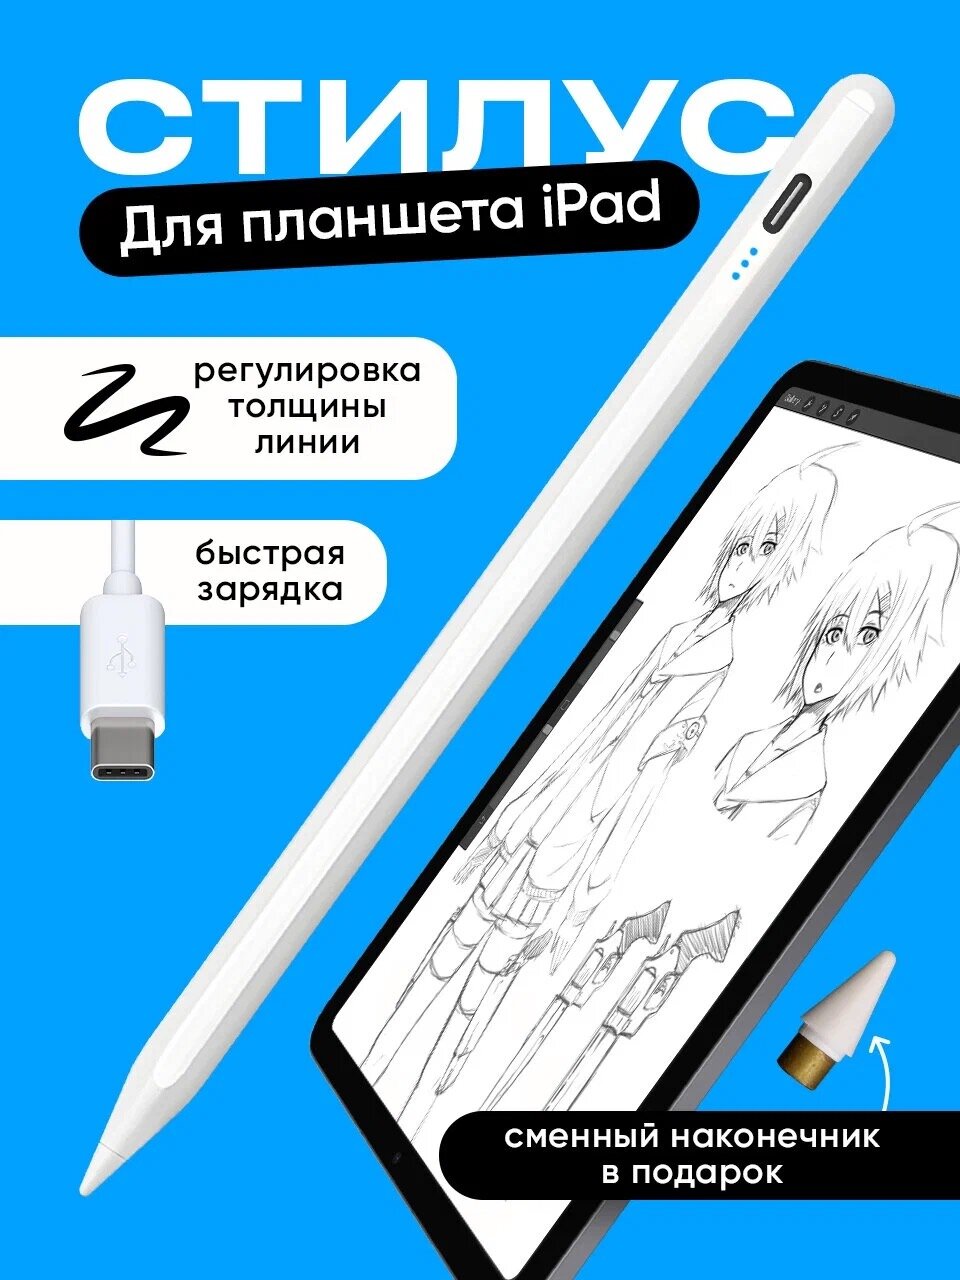 Стилус для планшета iPad Apple pencil для рисования/ Ручка для планшета Apple